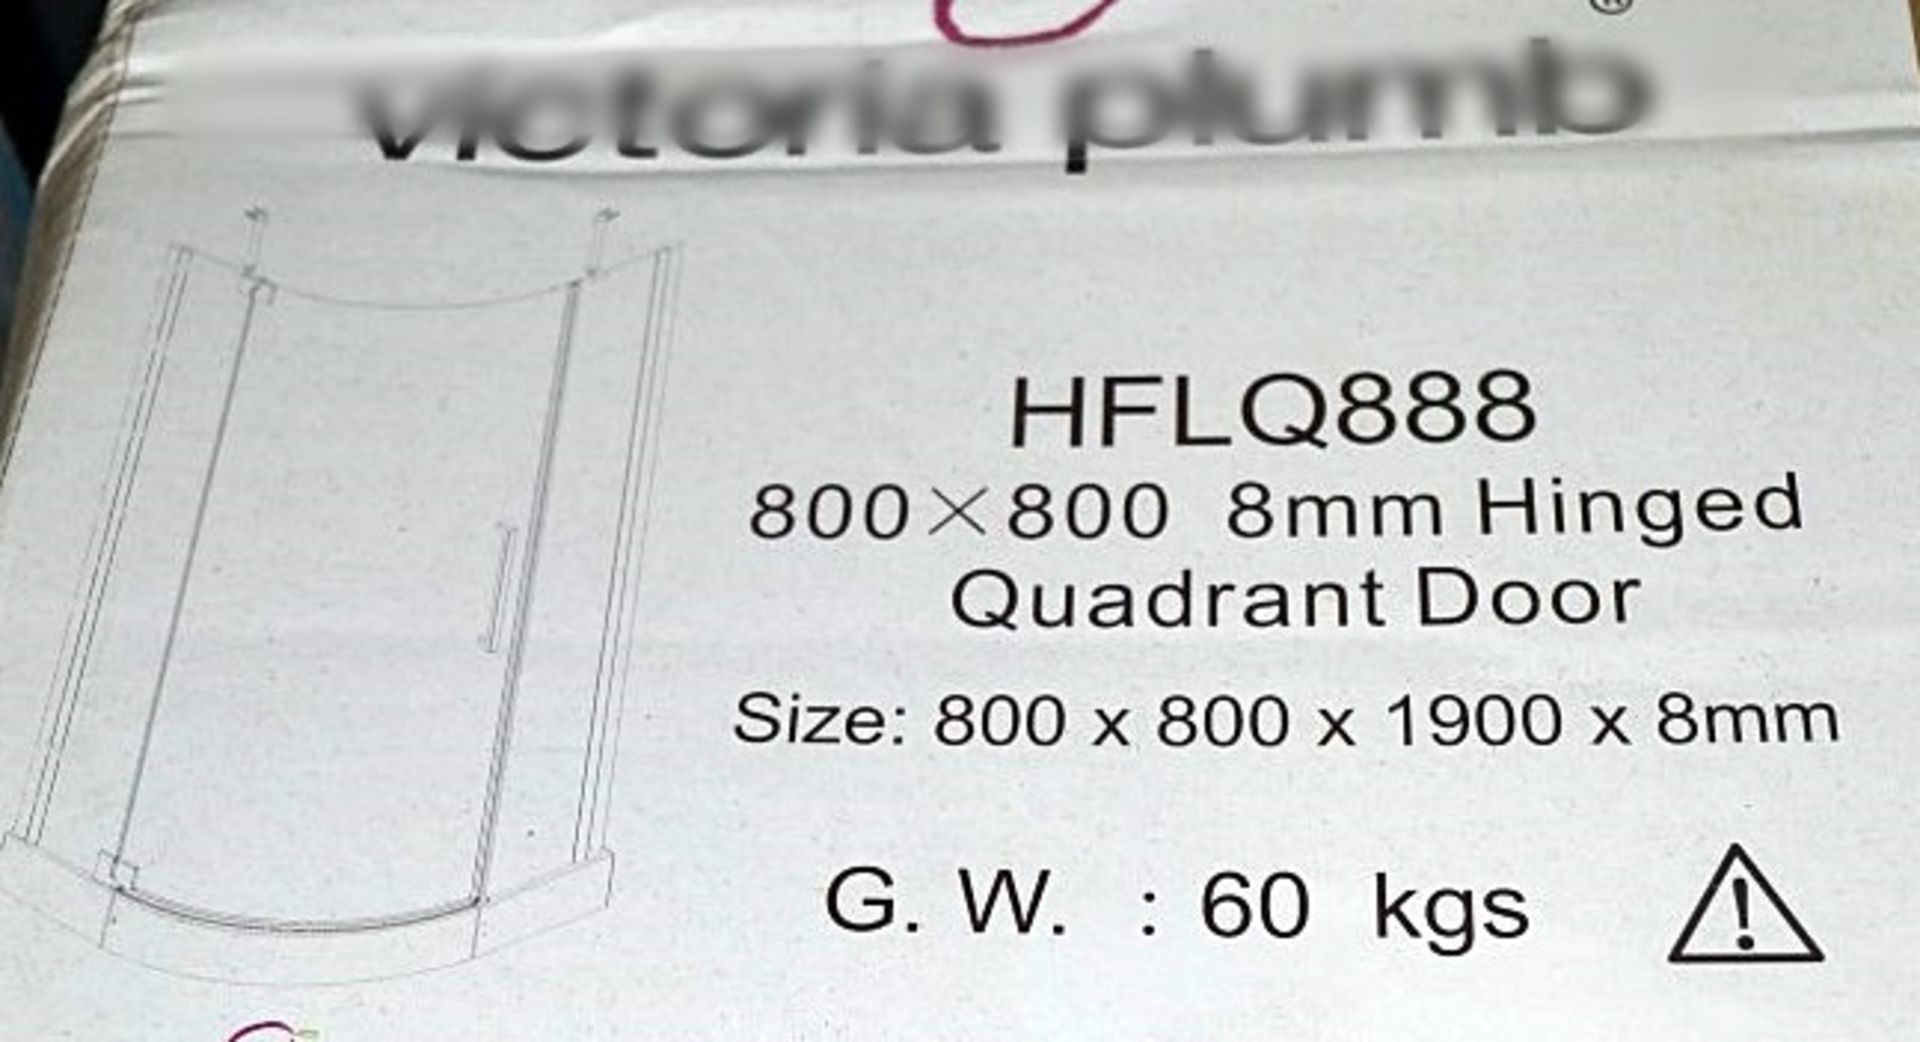 1 x 800x800 Hinged Quadrant Door - HFLQ888 - Dimensions: Size: 800 x 800 x 1900 x 8mm - Ref: